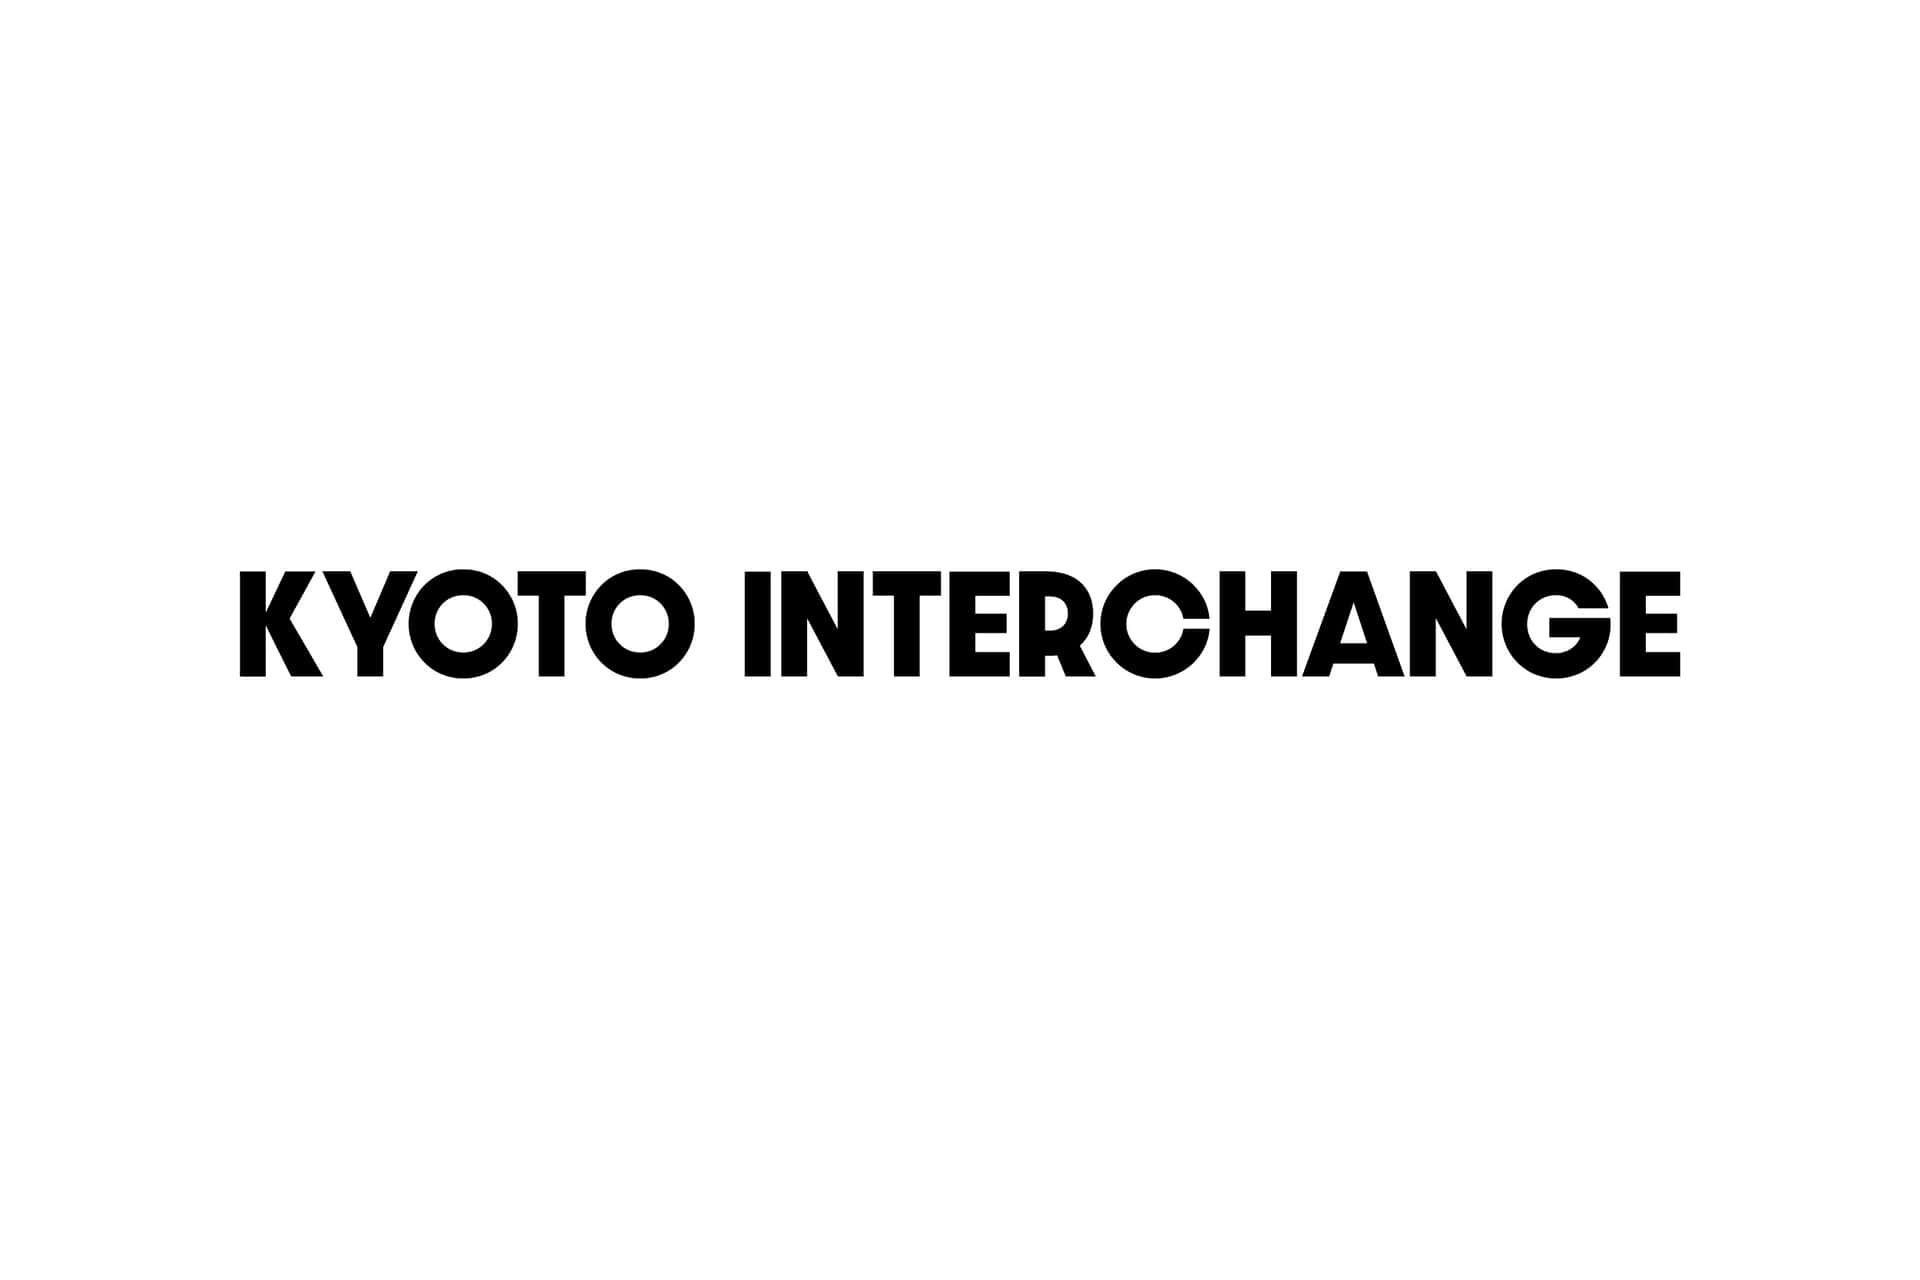 Logotipode Intercambio De Kyoto Sobre Un Fondo Blanco. Fondo de pantalla